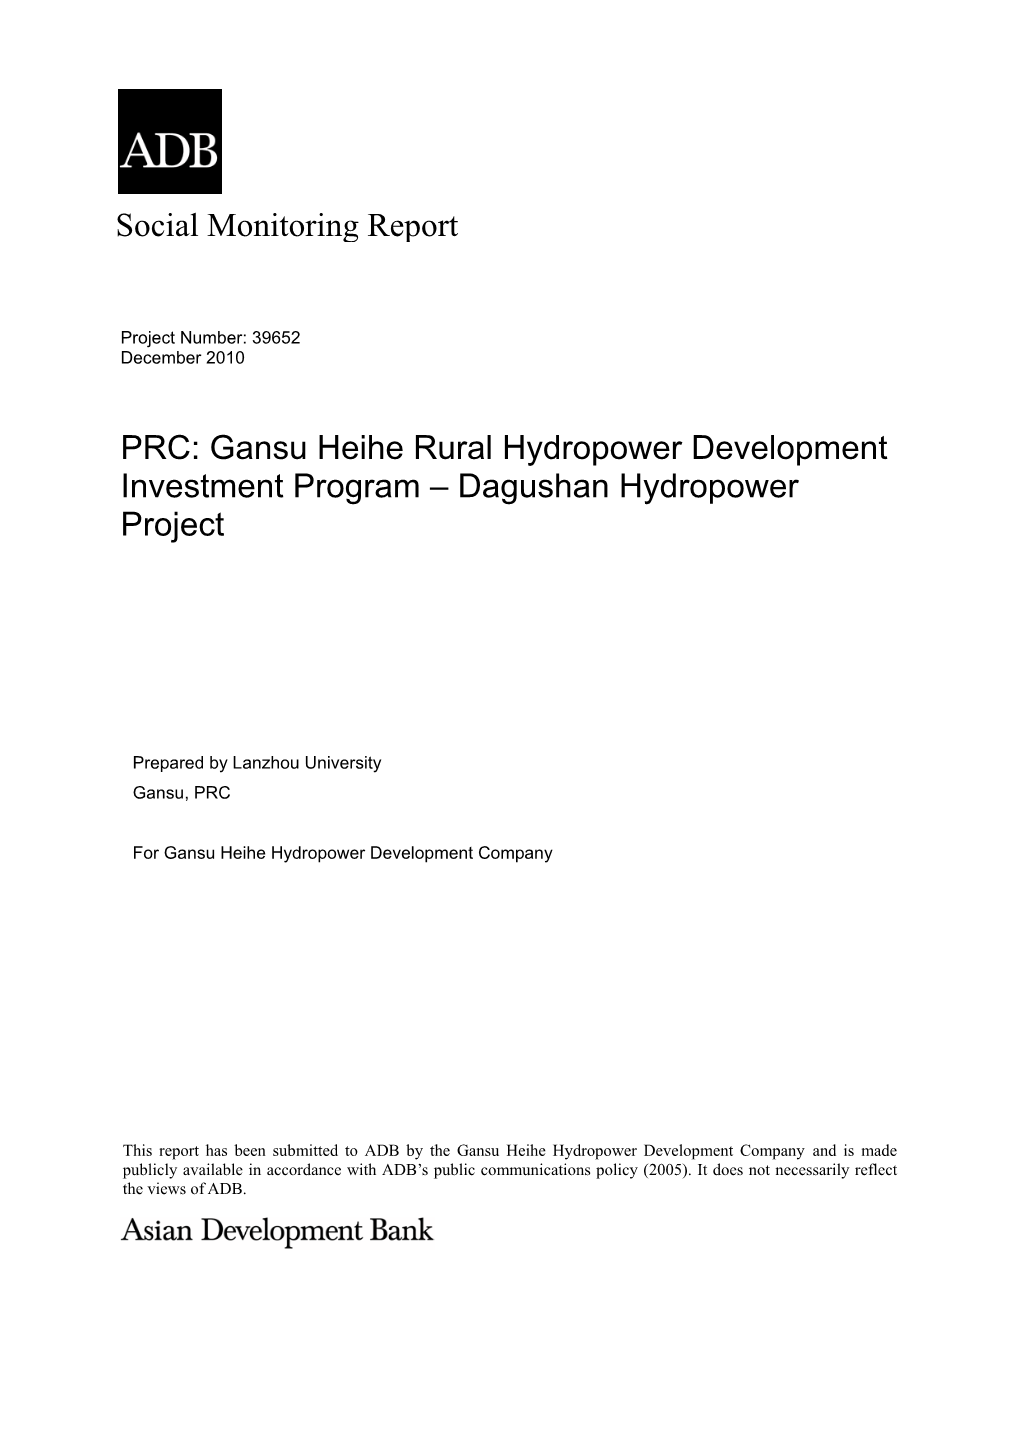 Gansu Heihe Rural Hydropower Development Investment Program – Dagushan Hydropower Project